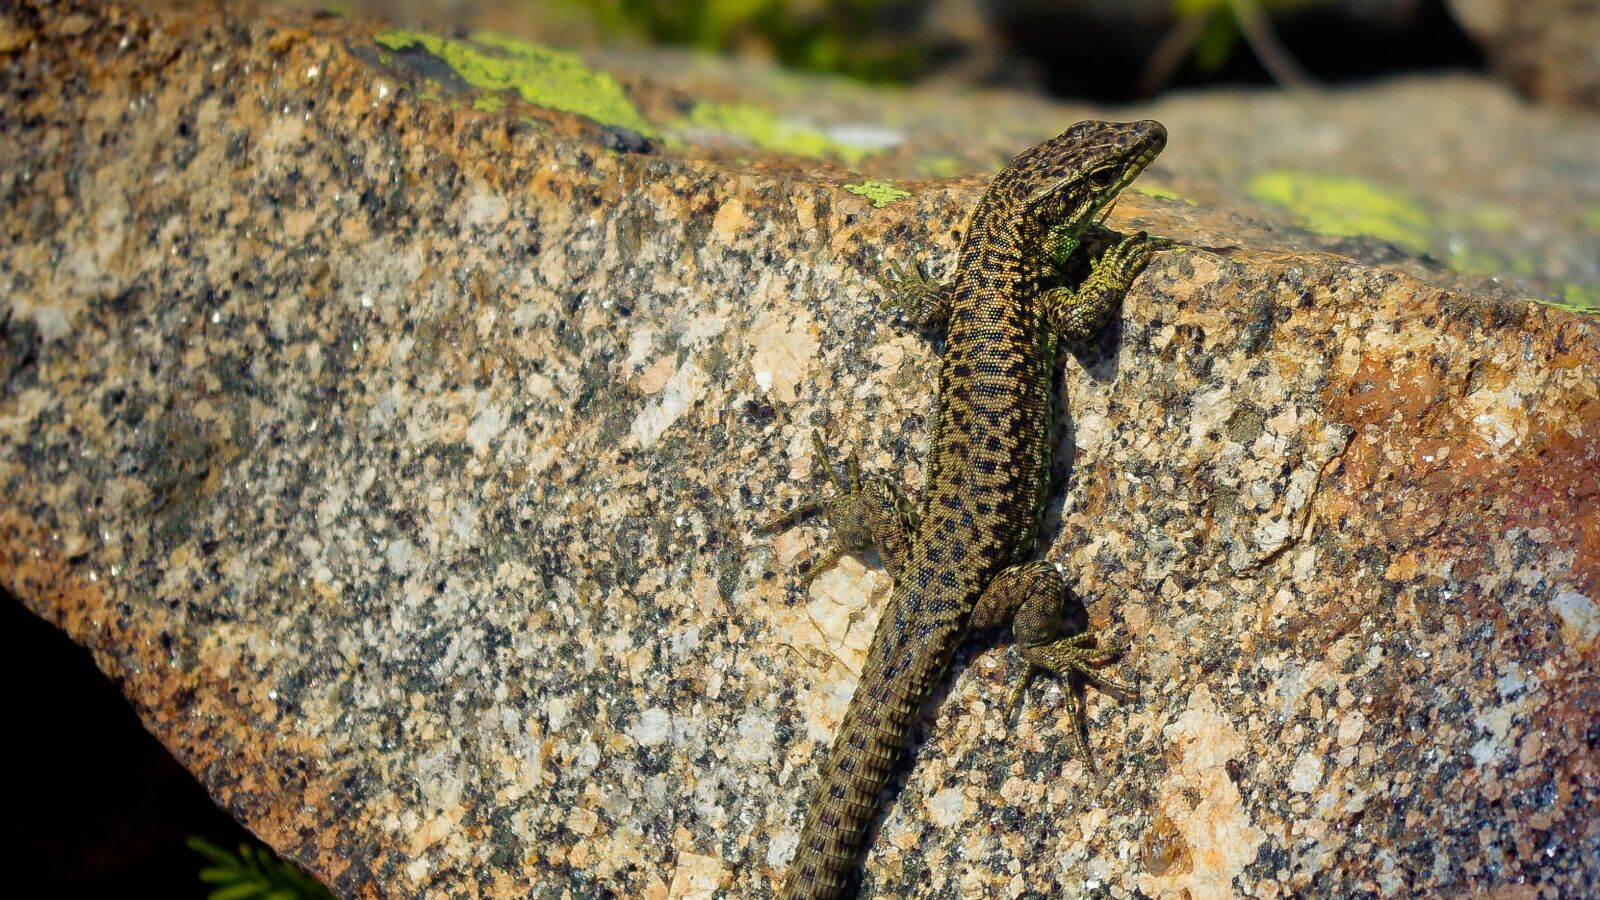 smc PENTAX-DA L 18-55mm F3.5-5.6 sample photo. Lizard, nature, reptile photography